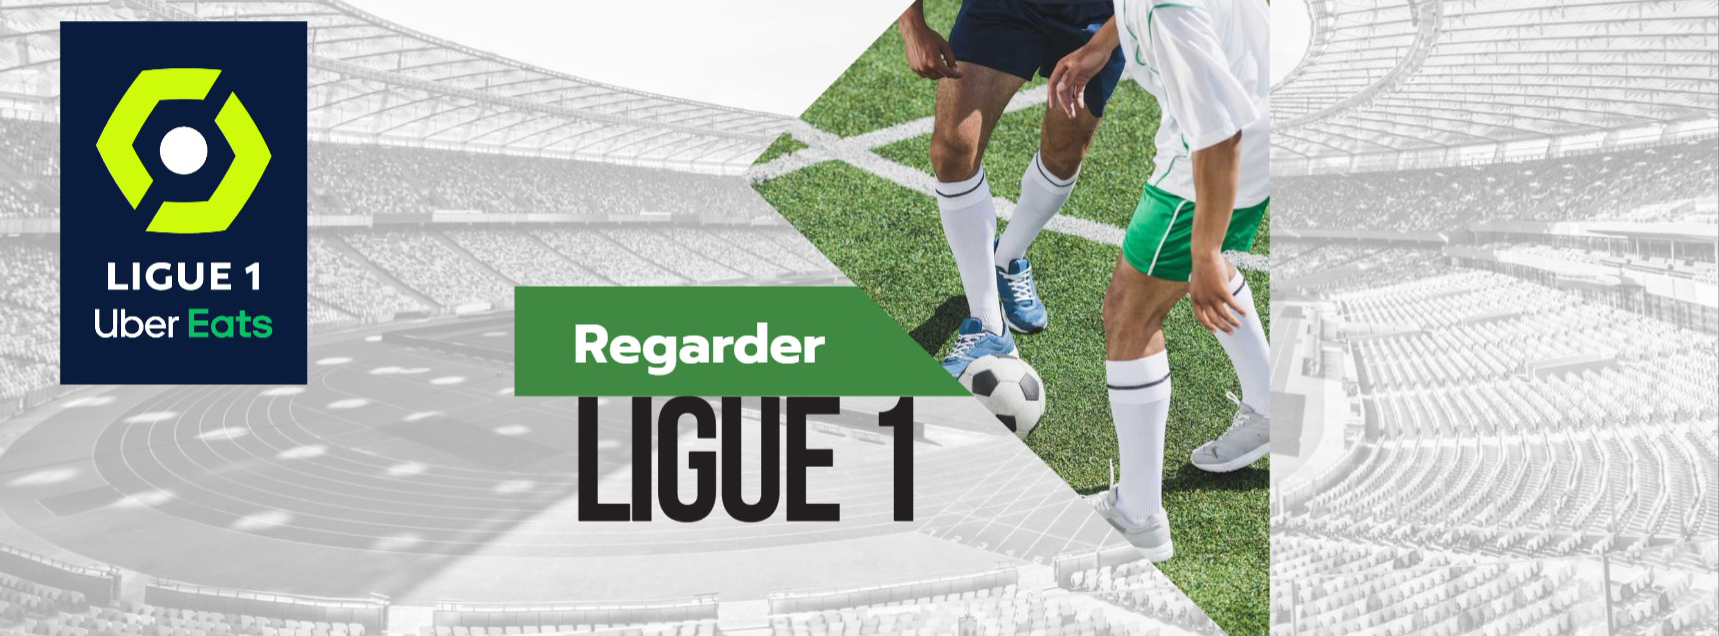 Ligue 1 matches